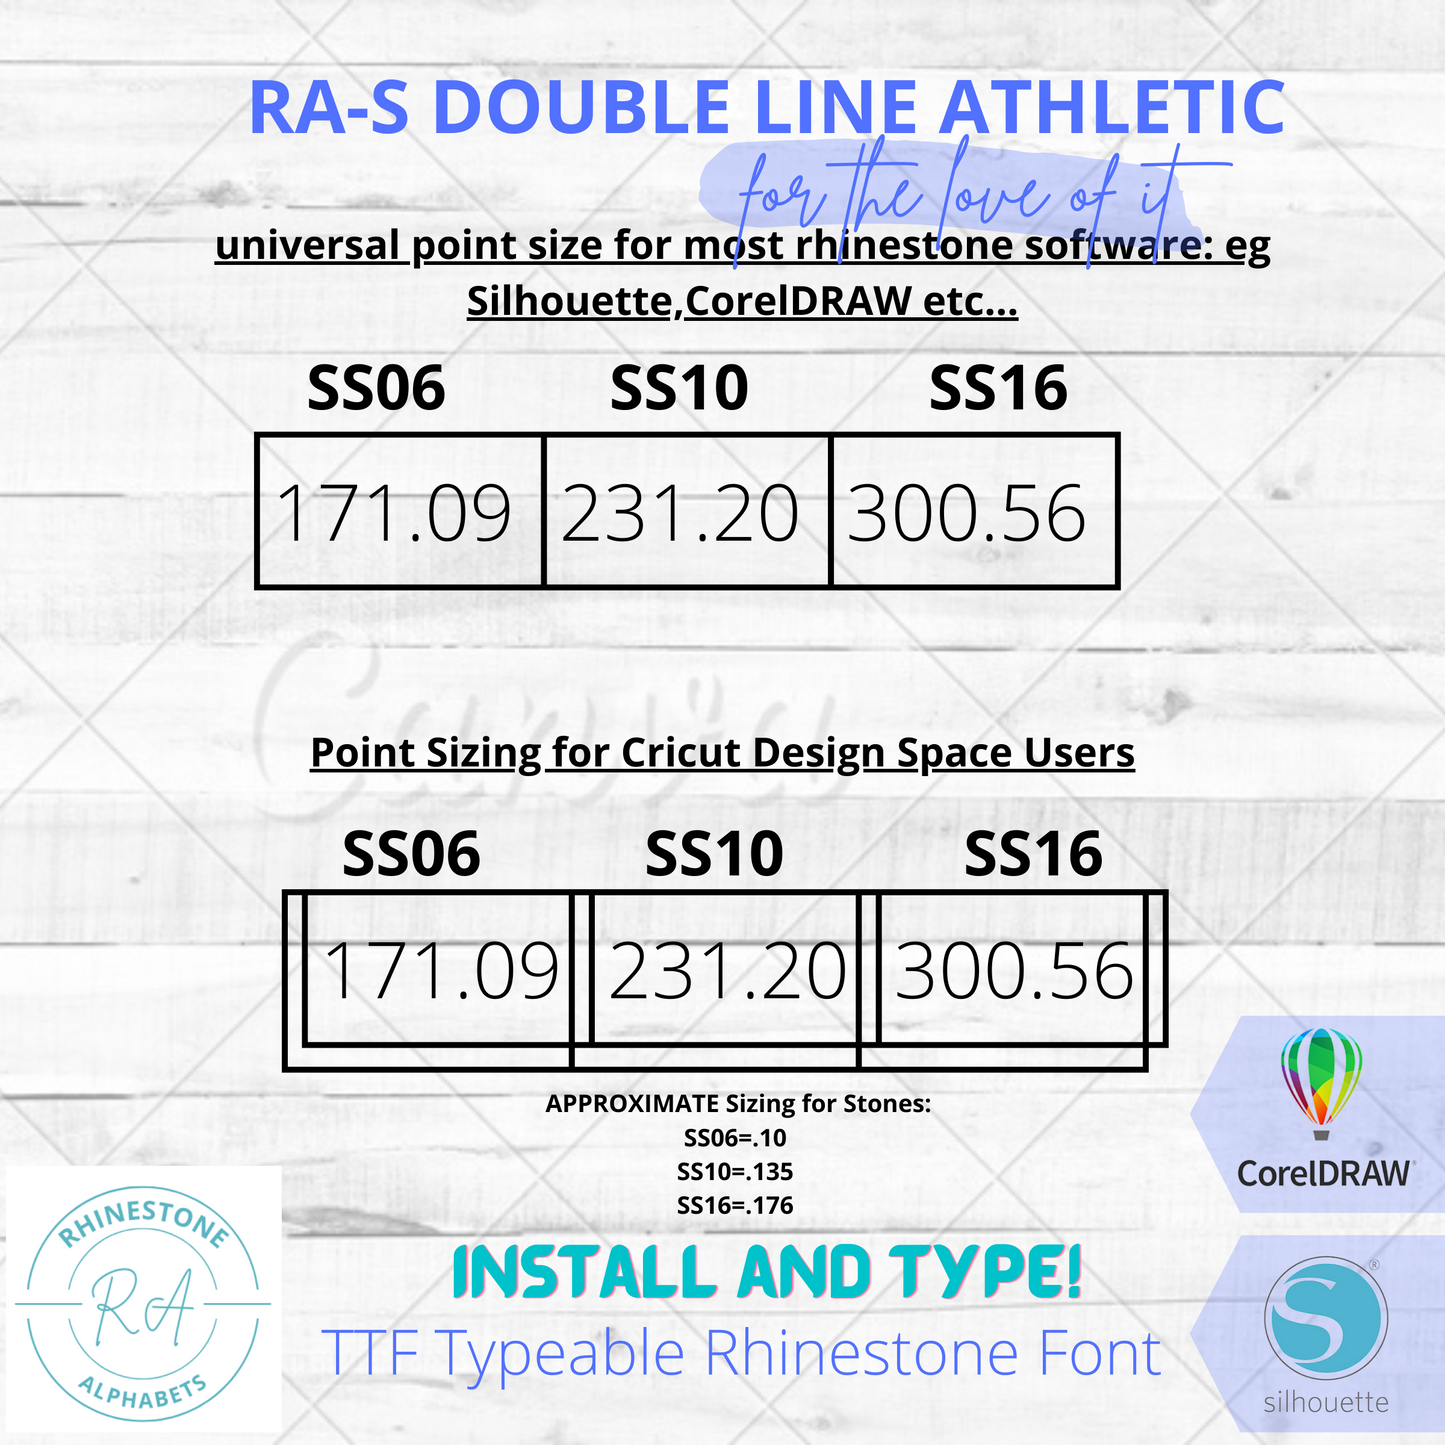 RA-S Doubleline Athletic